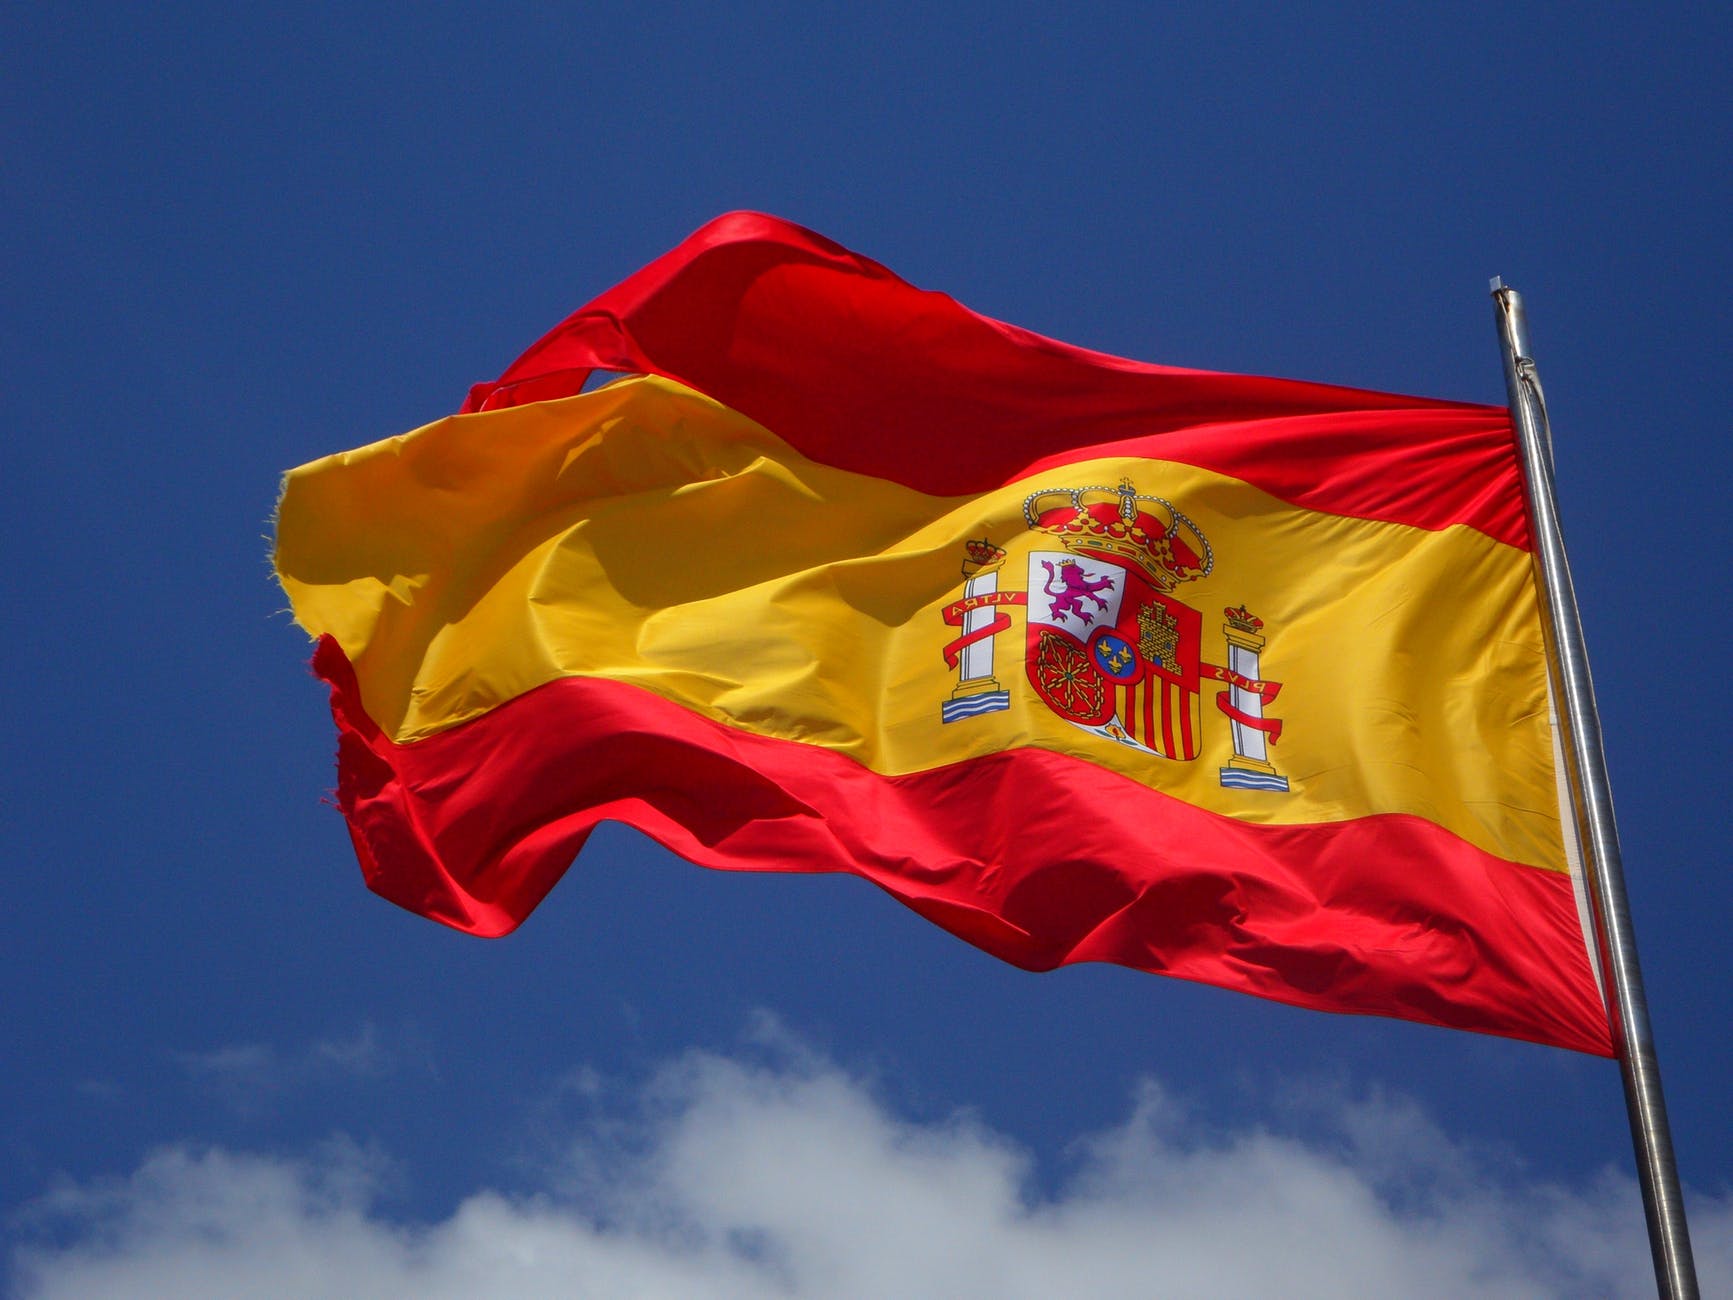 La bandiera spagnola by pixabay